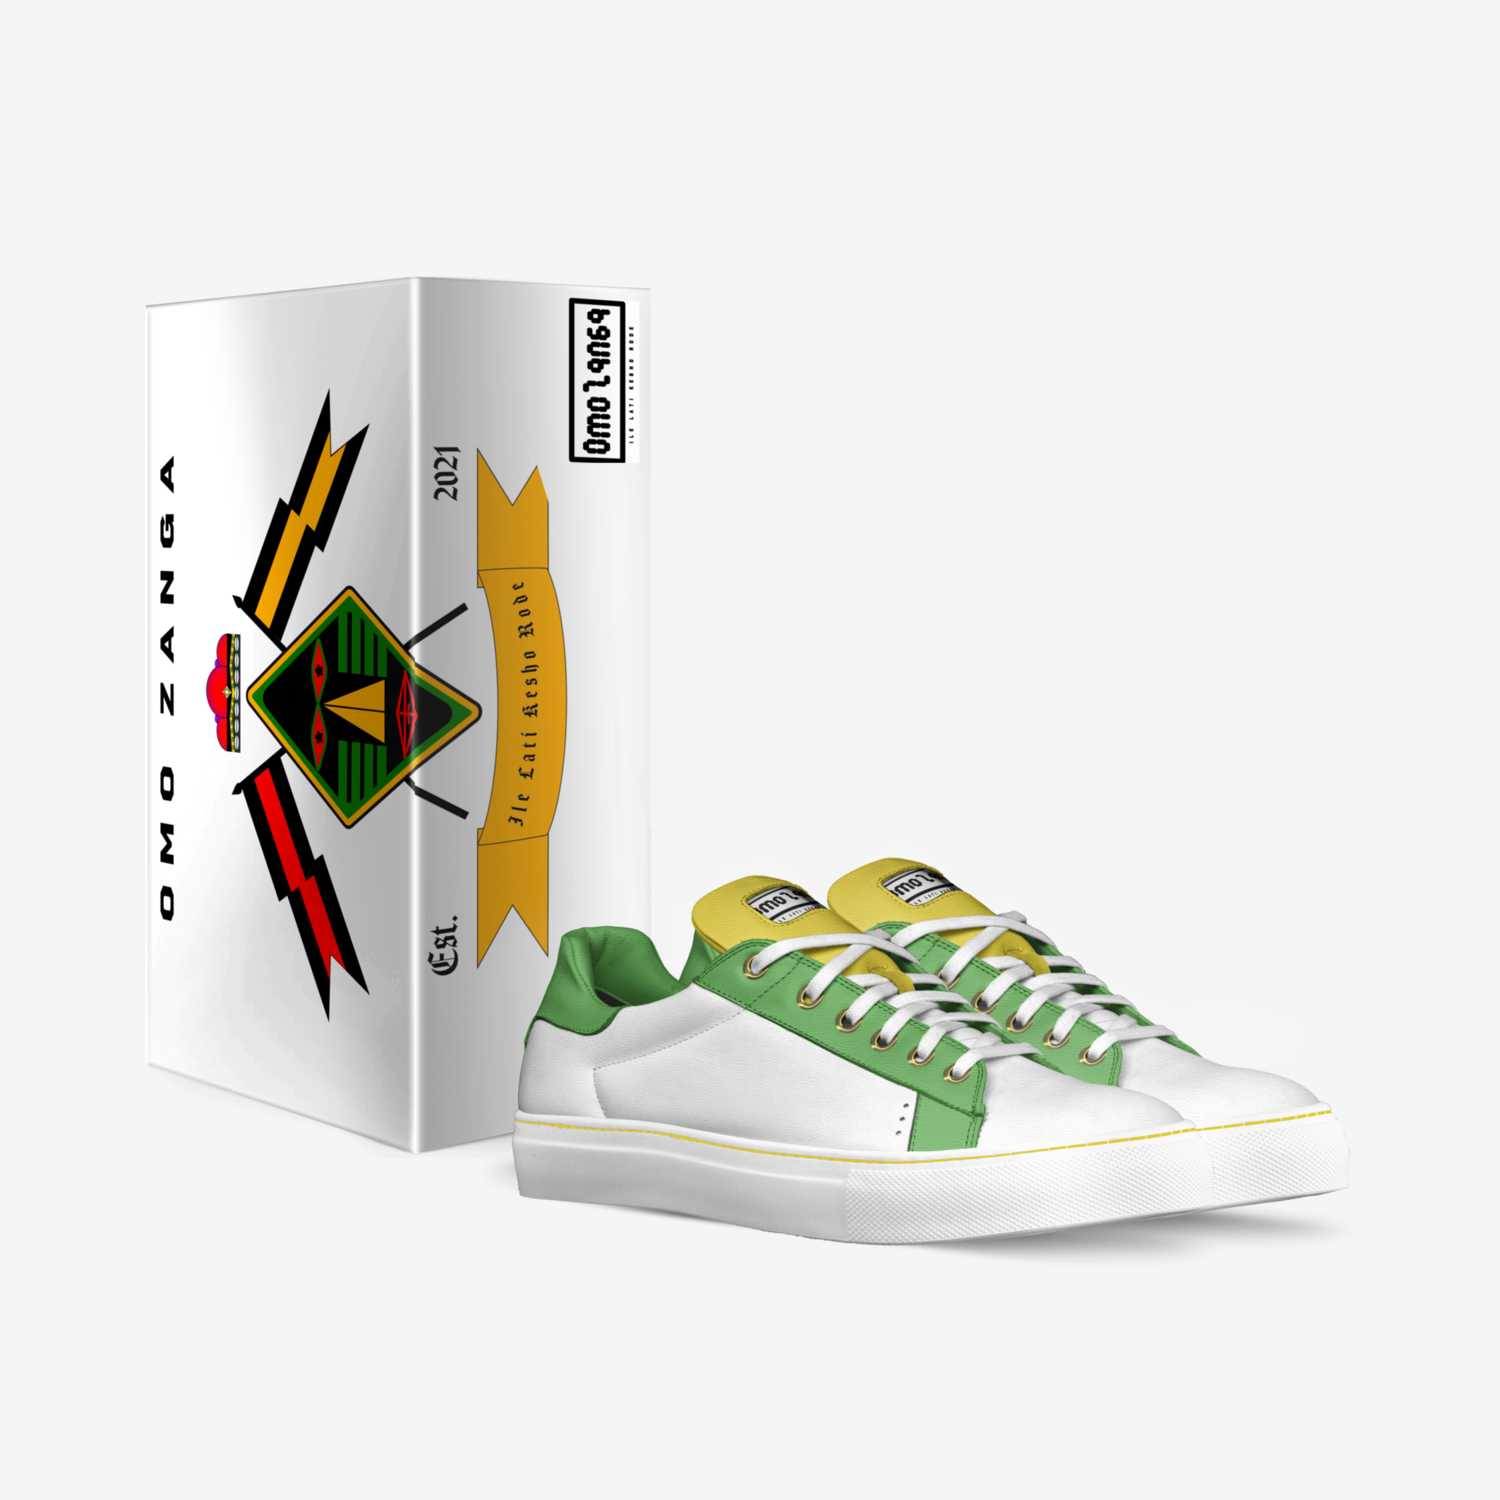 Omo Zanga custom made in Italy shoes by Olu Ogundipe | Box view